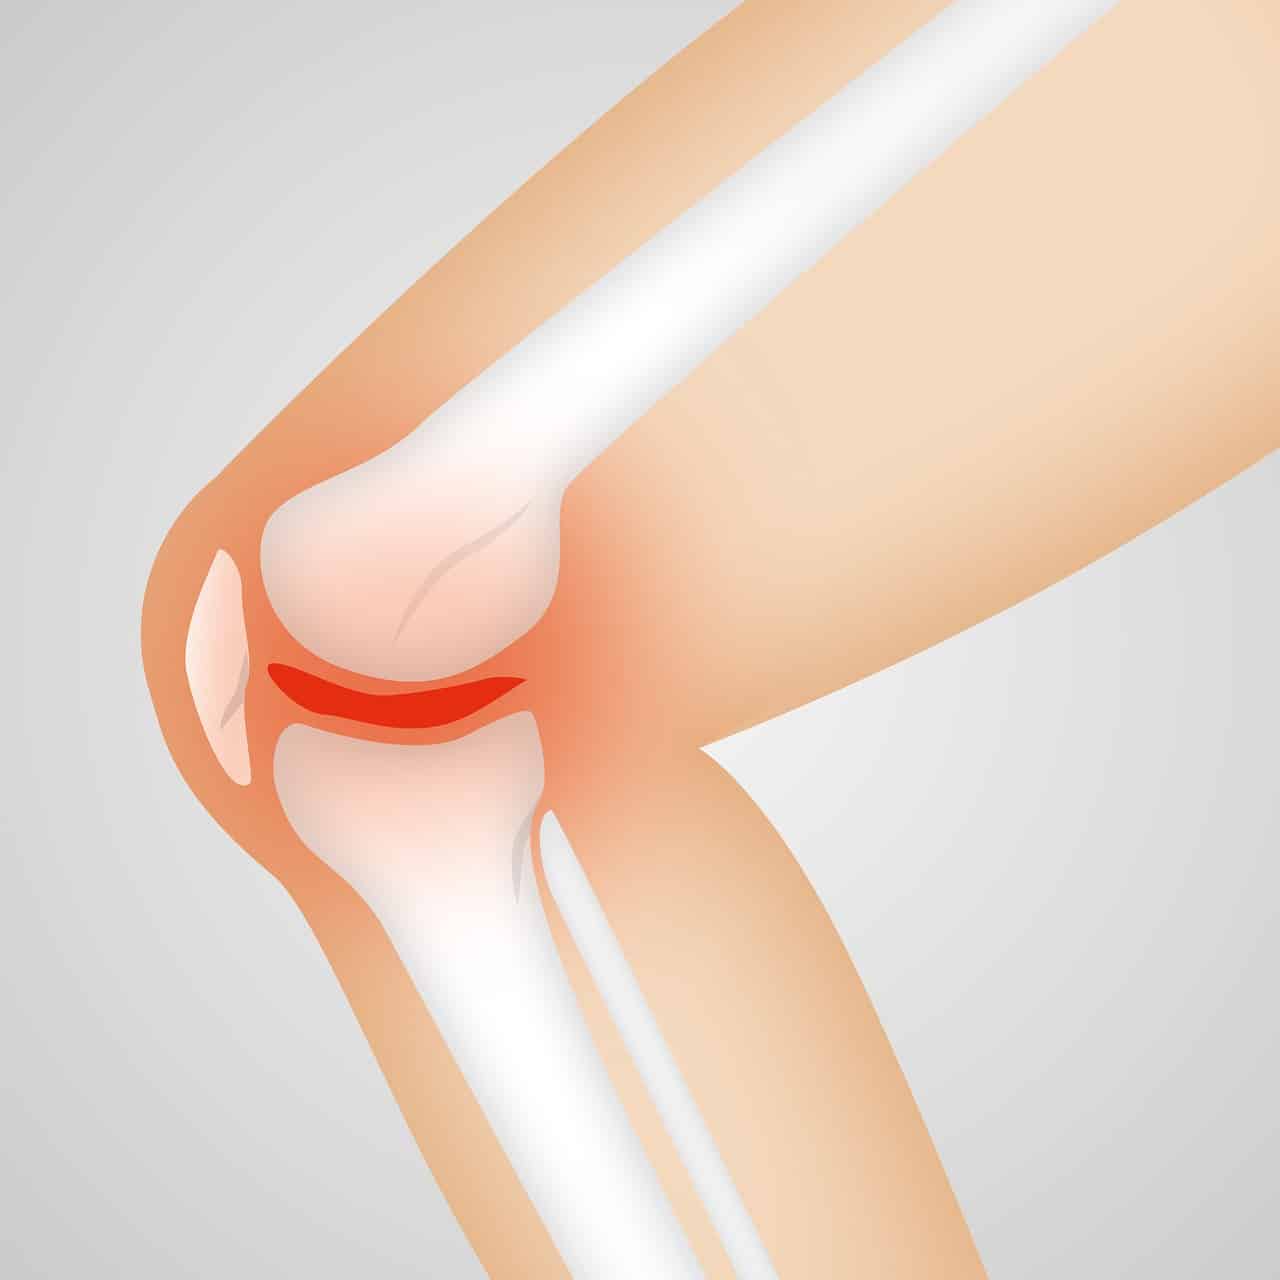 artrose no joelho tem cura?